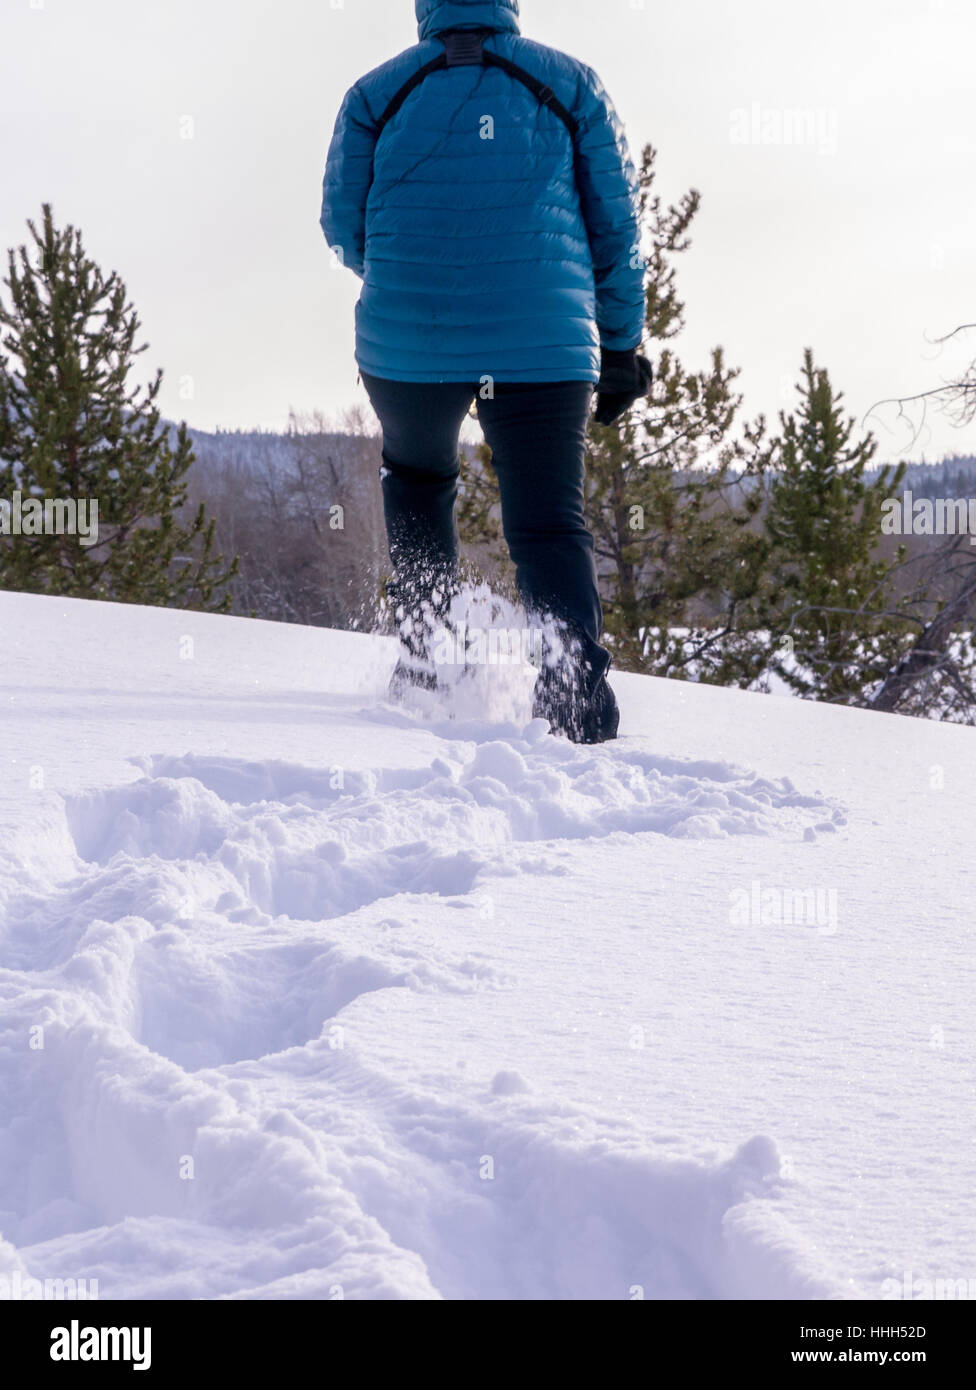 Femmina con le racchette da neve in inverno, orientamento verticale Foto Stock